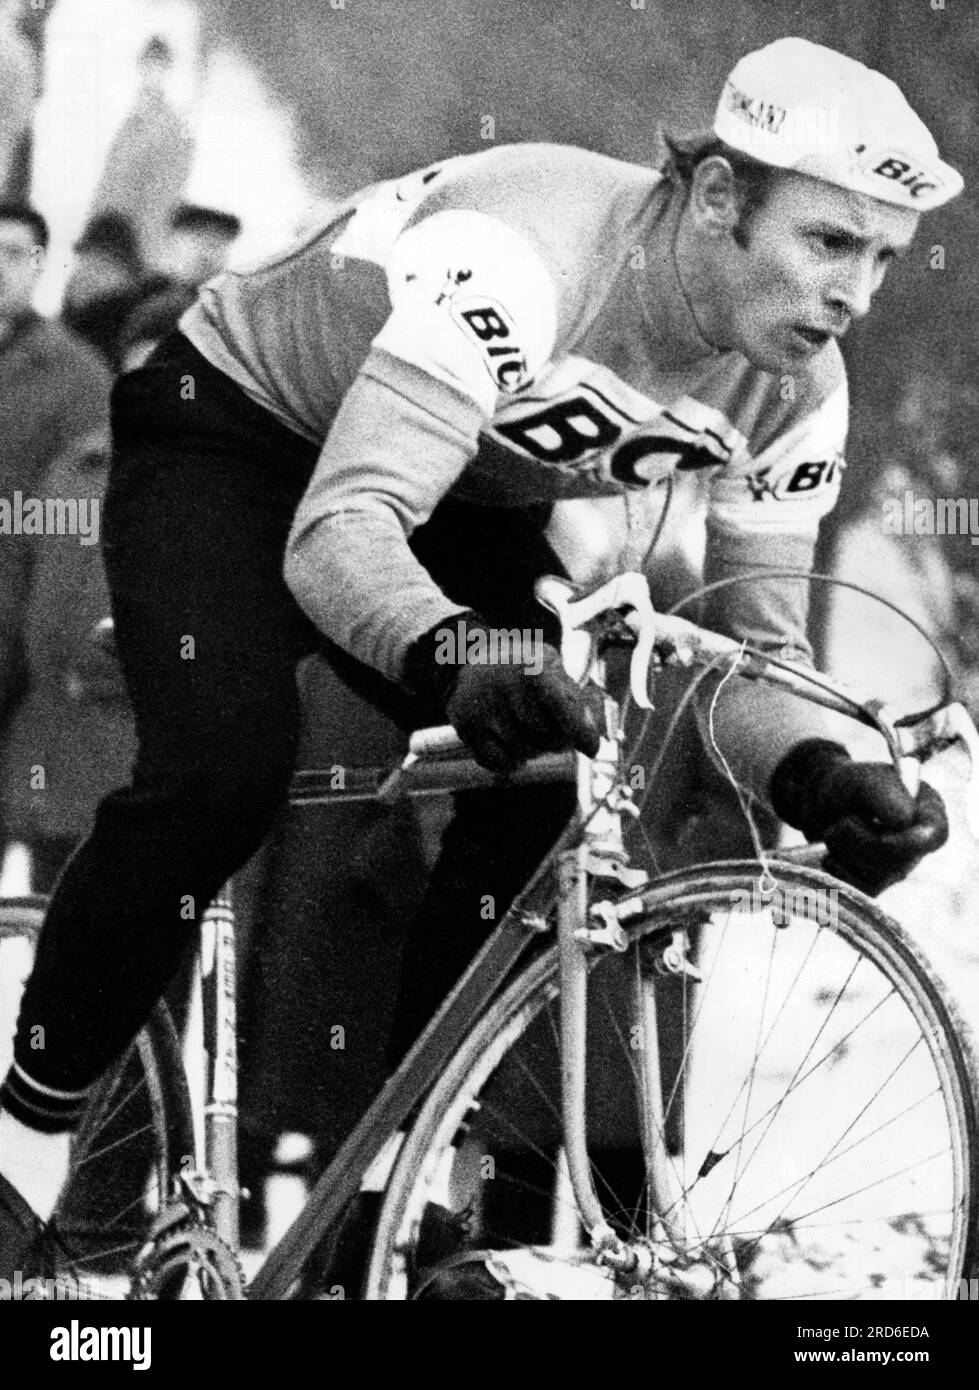 Wolfshohl, Rolf, * 27.12.1938, athlète allemand (coureur cycliste), lors de la course de cross-country, 1970, INFORMATIONS-AUTORISATION-DROITS-SUPPLÉMENTAIRES-NON-DISPONIBLES Banque D'Images